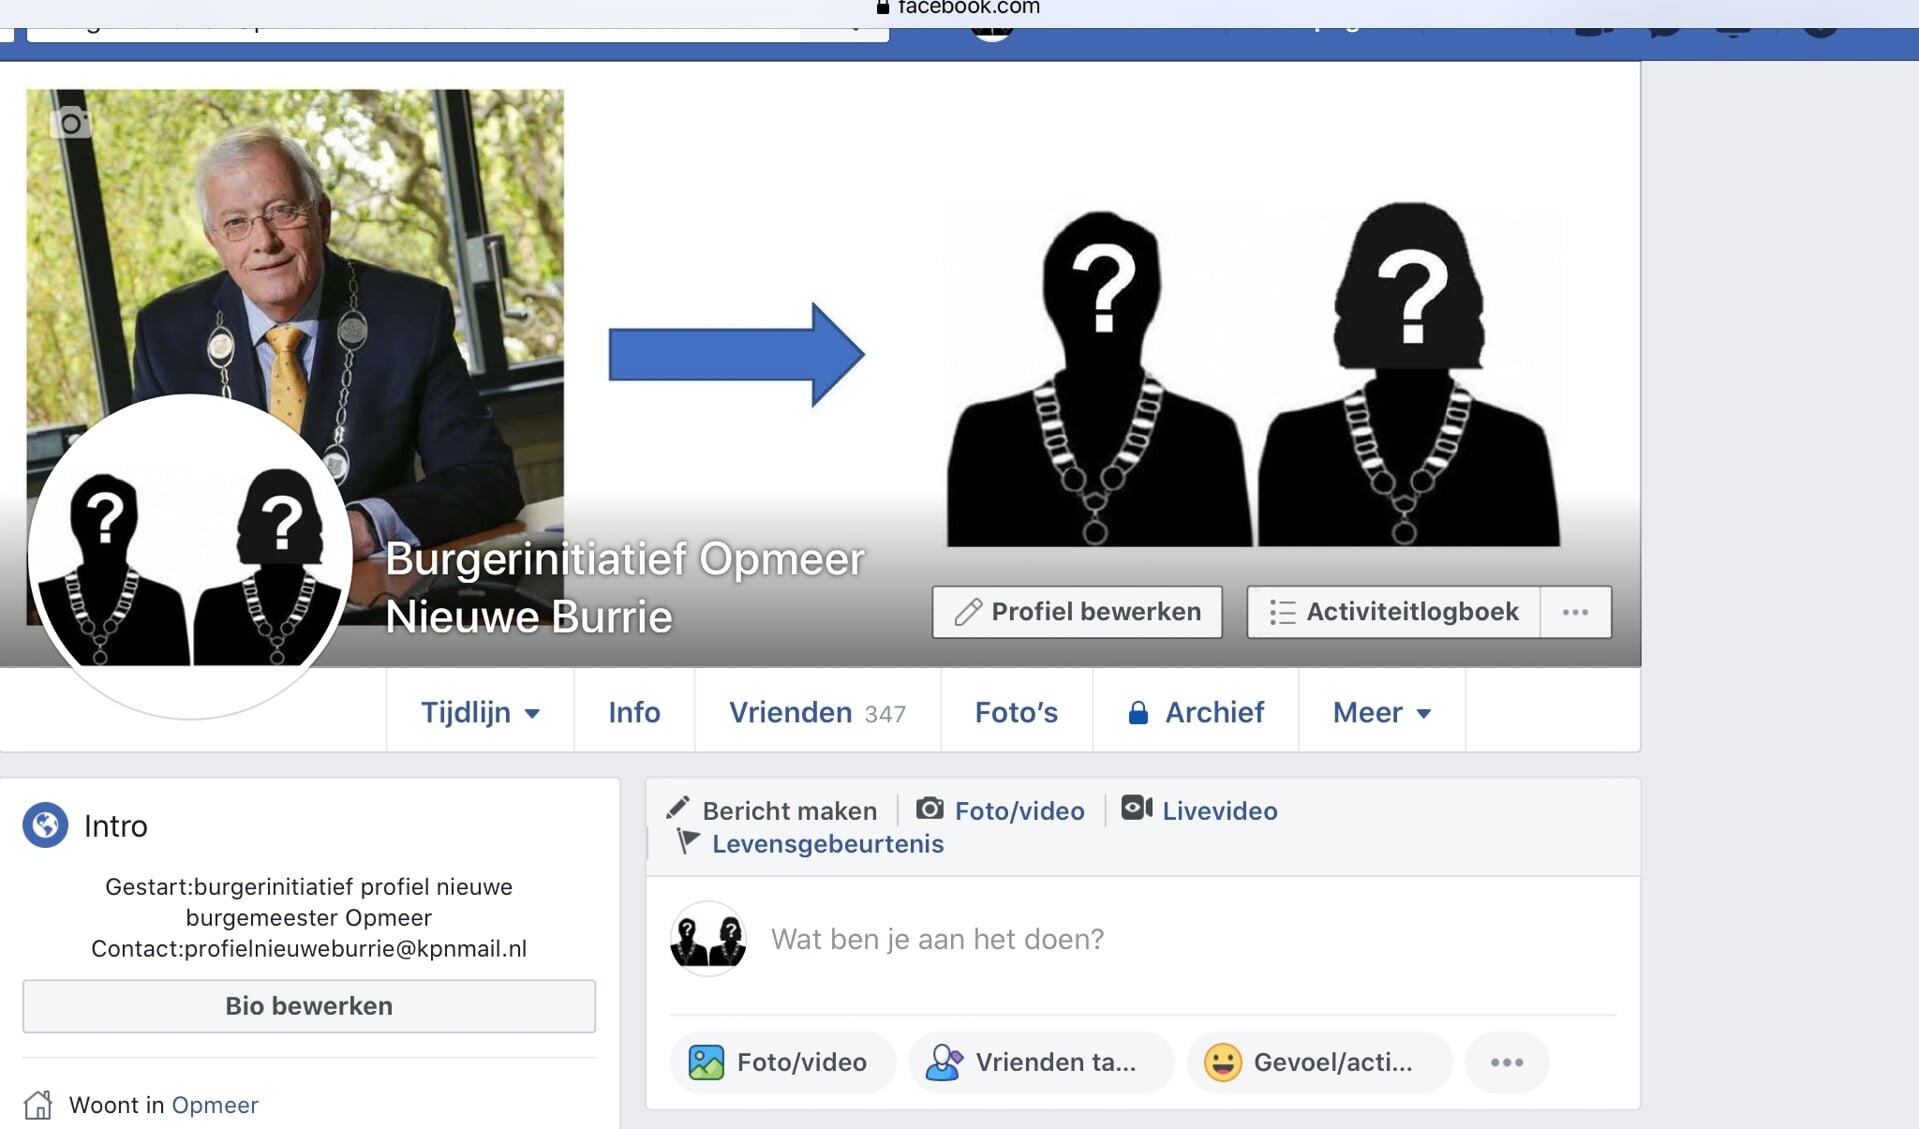 Neem ook een kijkje op de Facebookpagina van Burgerinitiatief Opmeer Nieuwe Burrie.